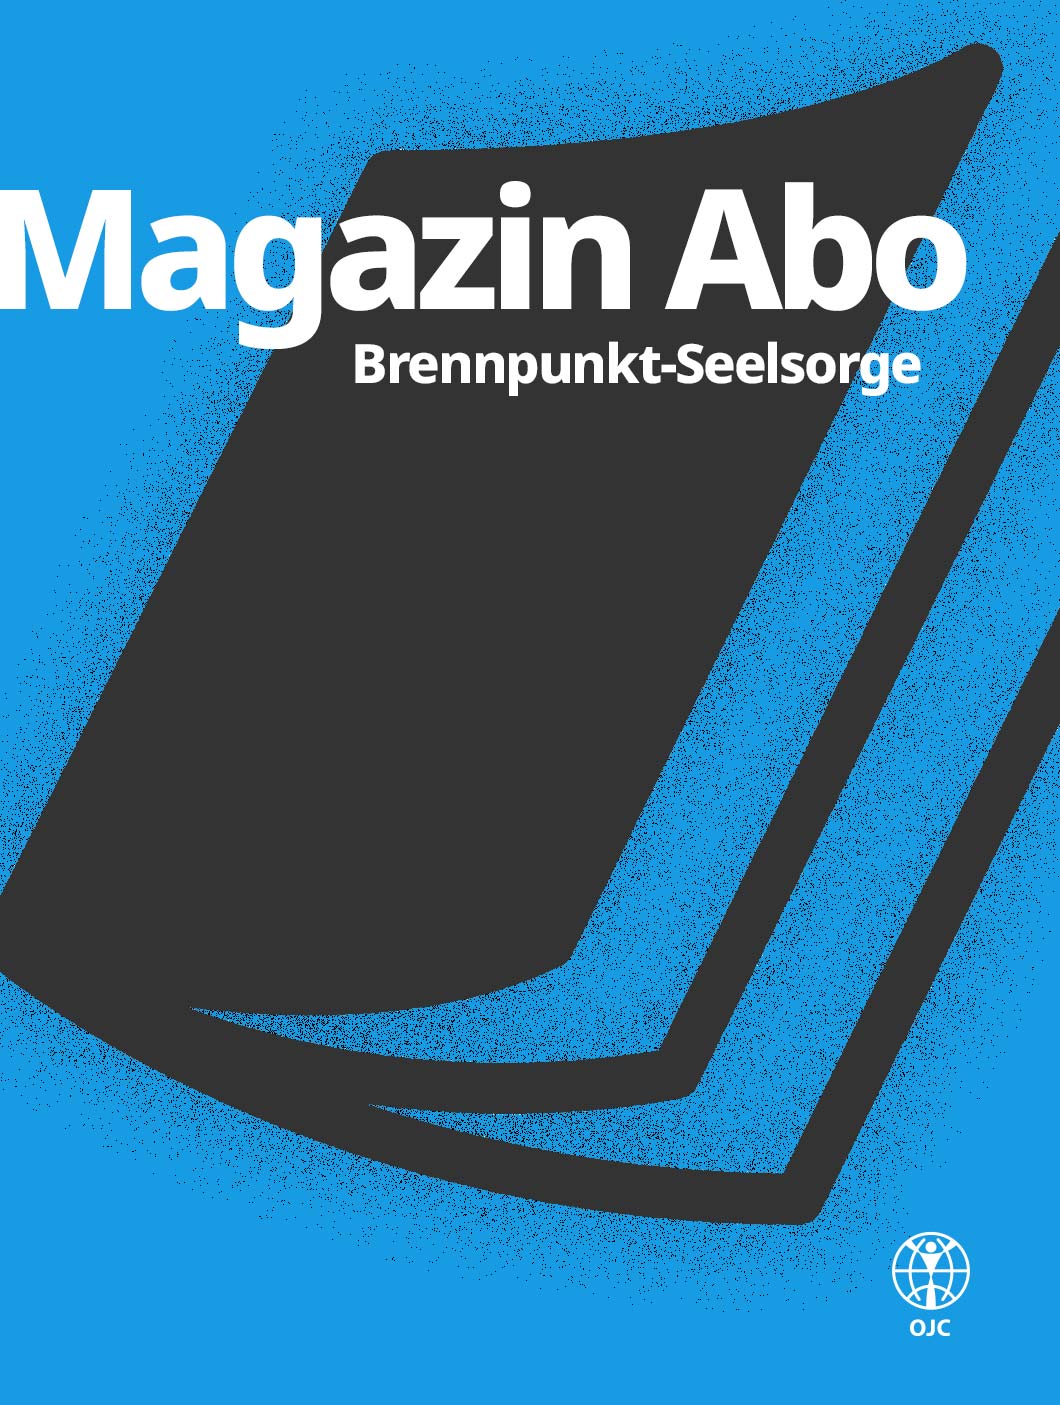 OJC-Greifswald: Magazin Abo Brennpunkt-Seelsorge aus Greifswald